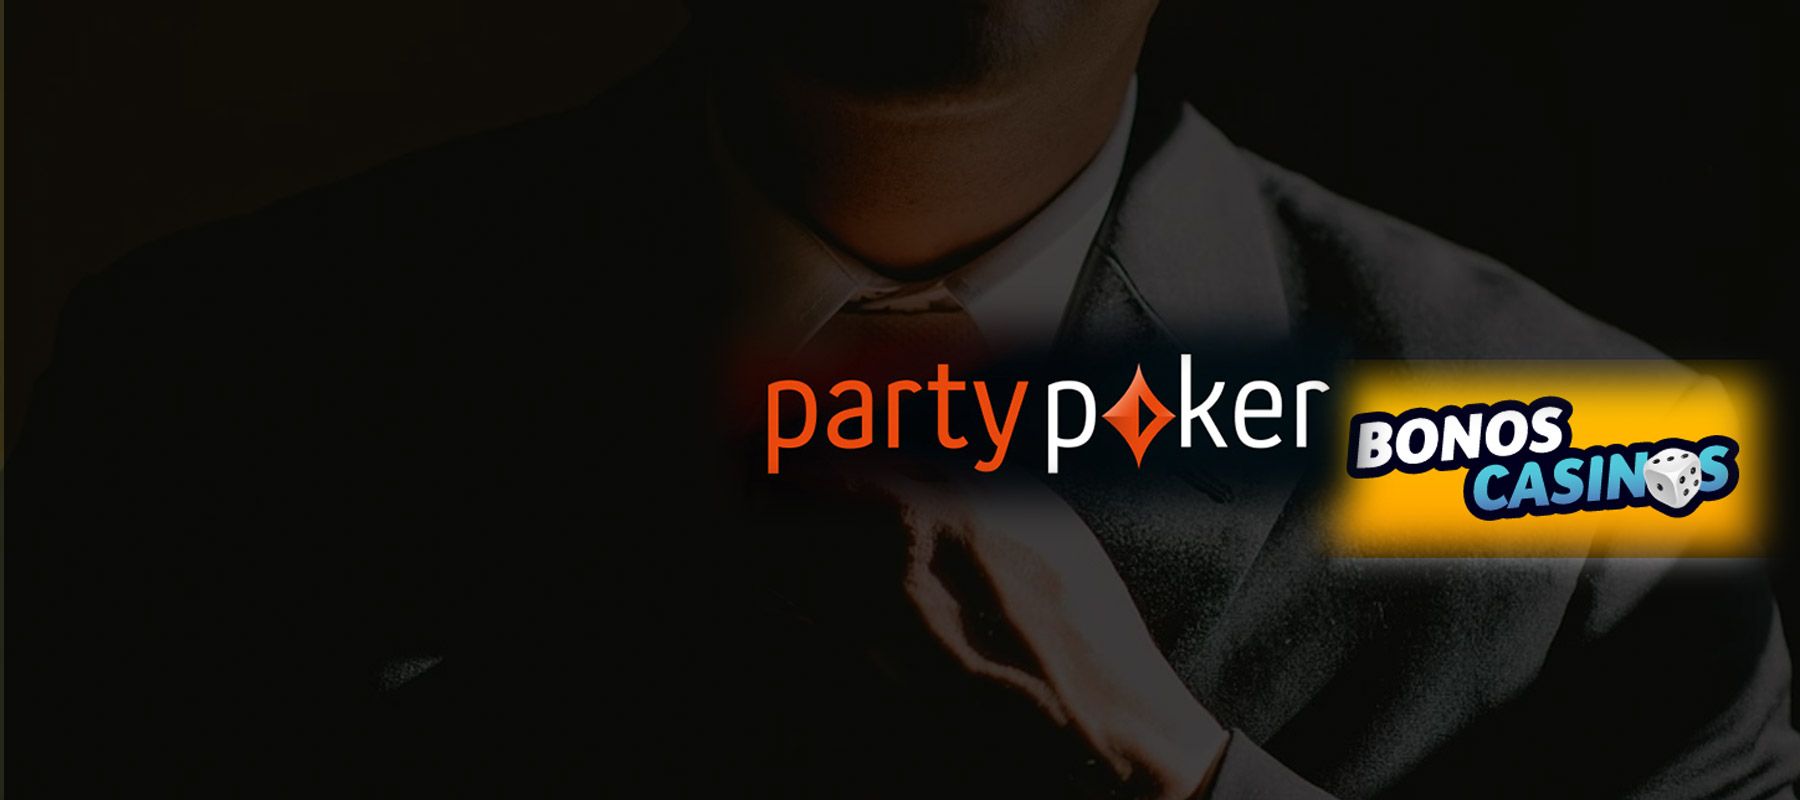 logo de PartyPoker dice “No” a los mercados ilegales